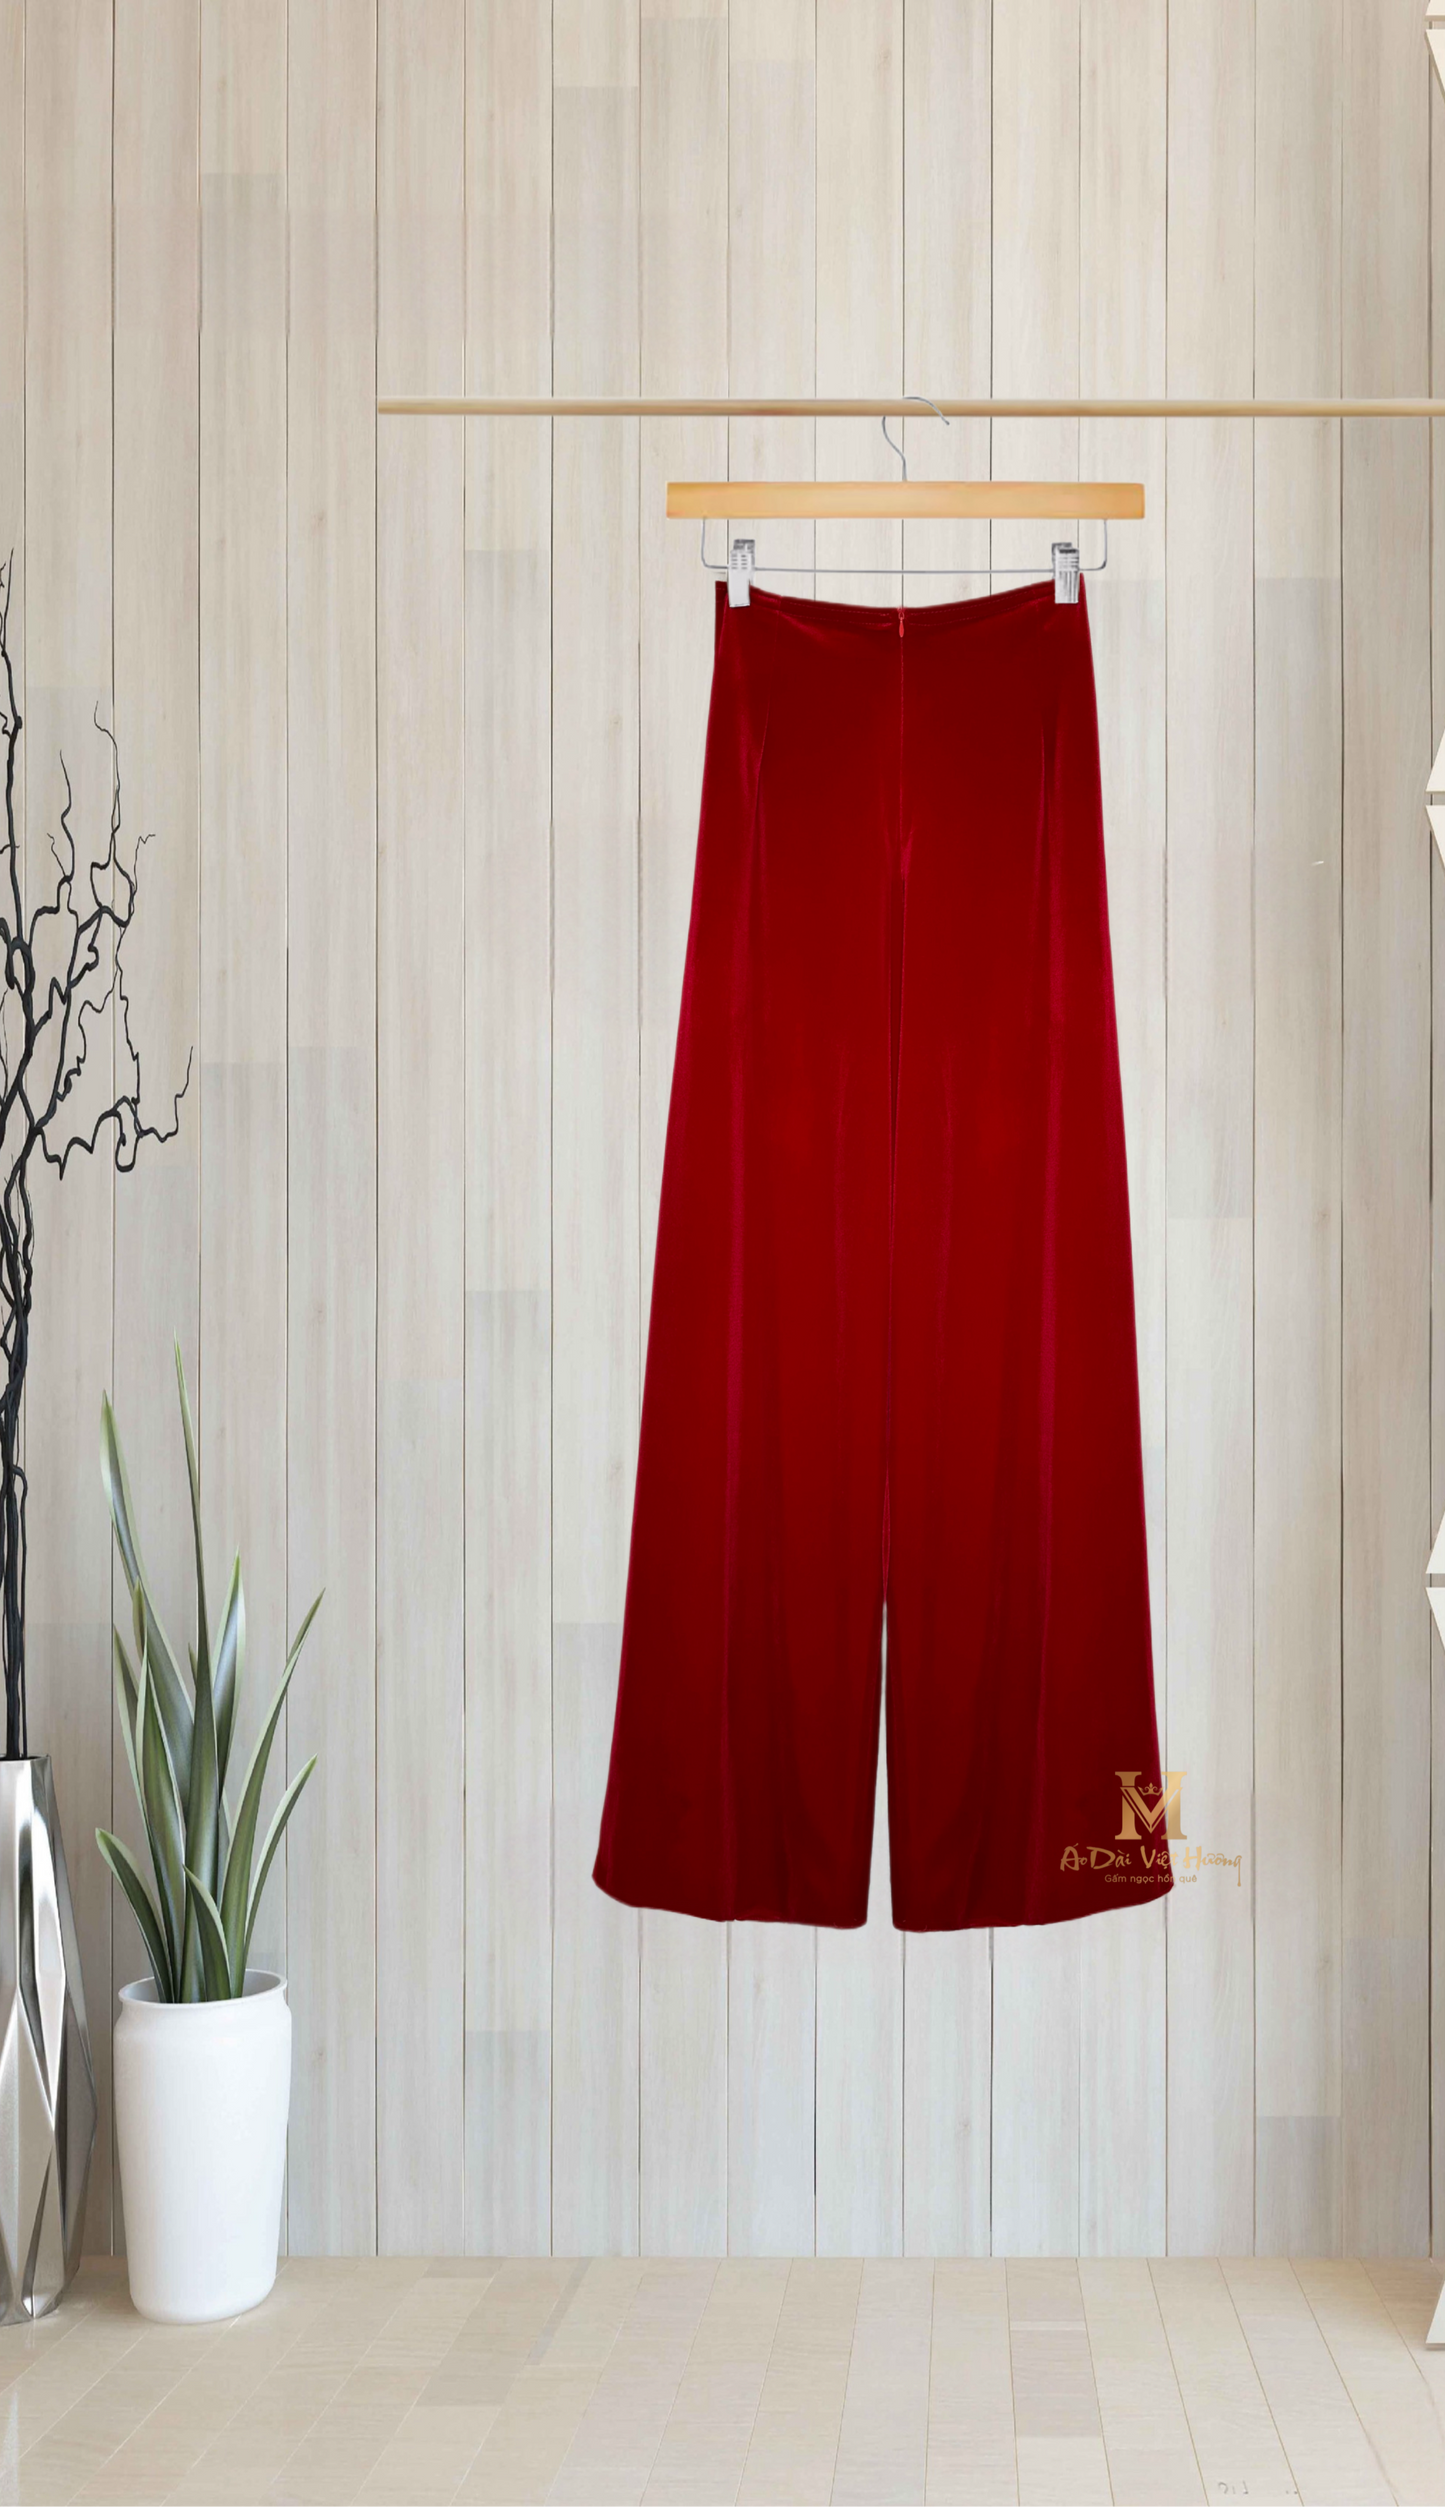 651 - Red Regular Velvet Pants (Quần Ống Thường Nhung Đỏ)